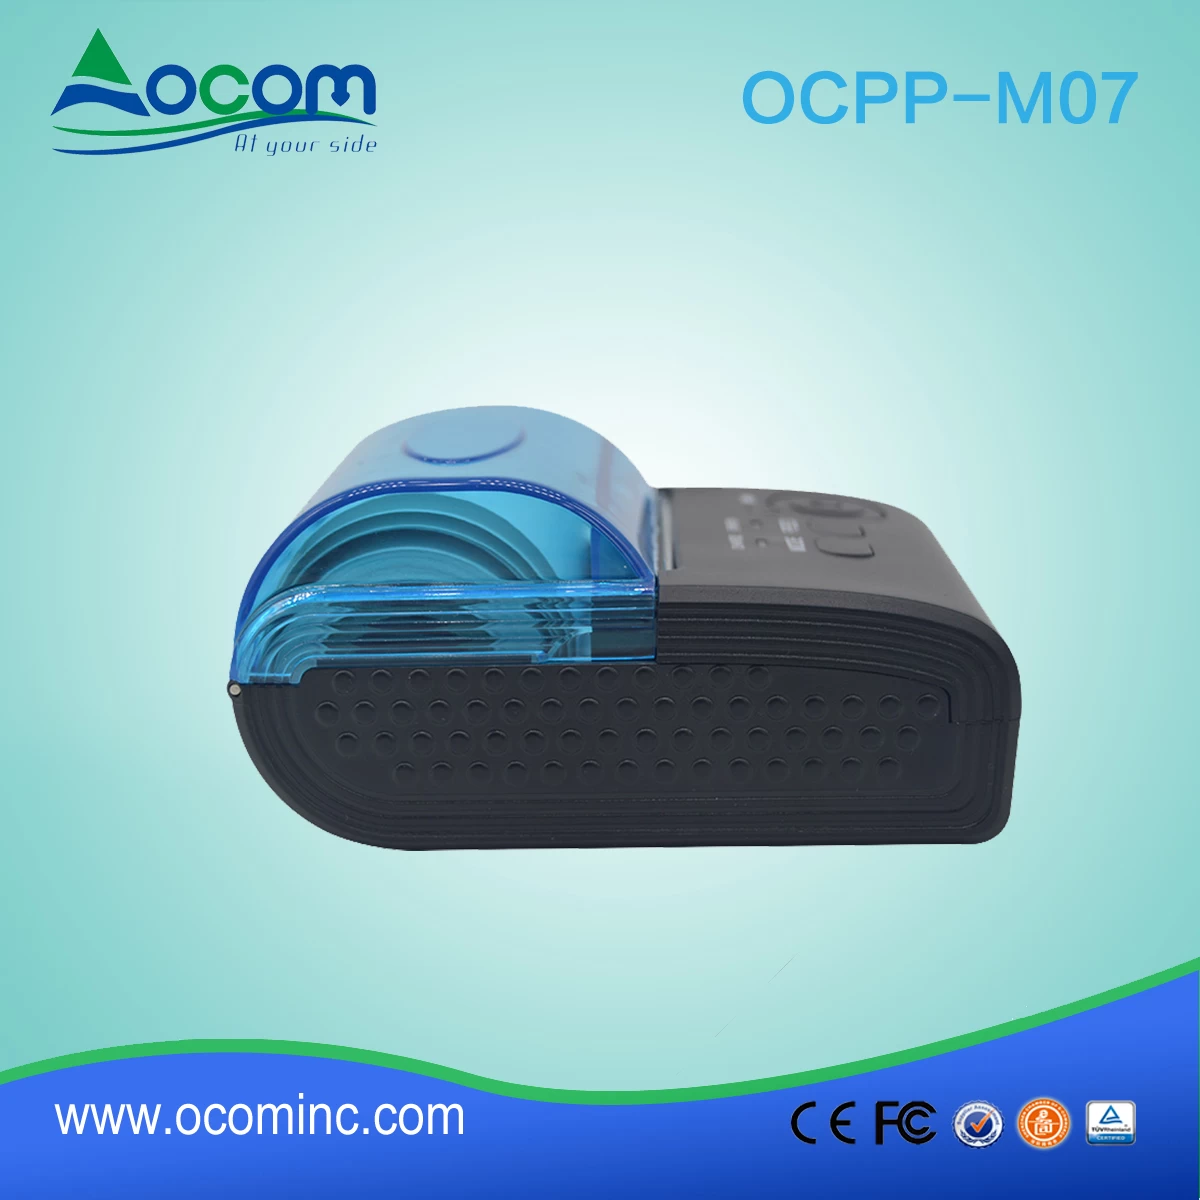 OCPP -M07) Mini imprimante à reçu thermique 58mm avec support pour